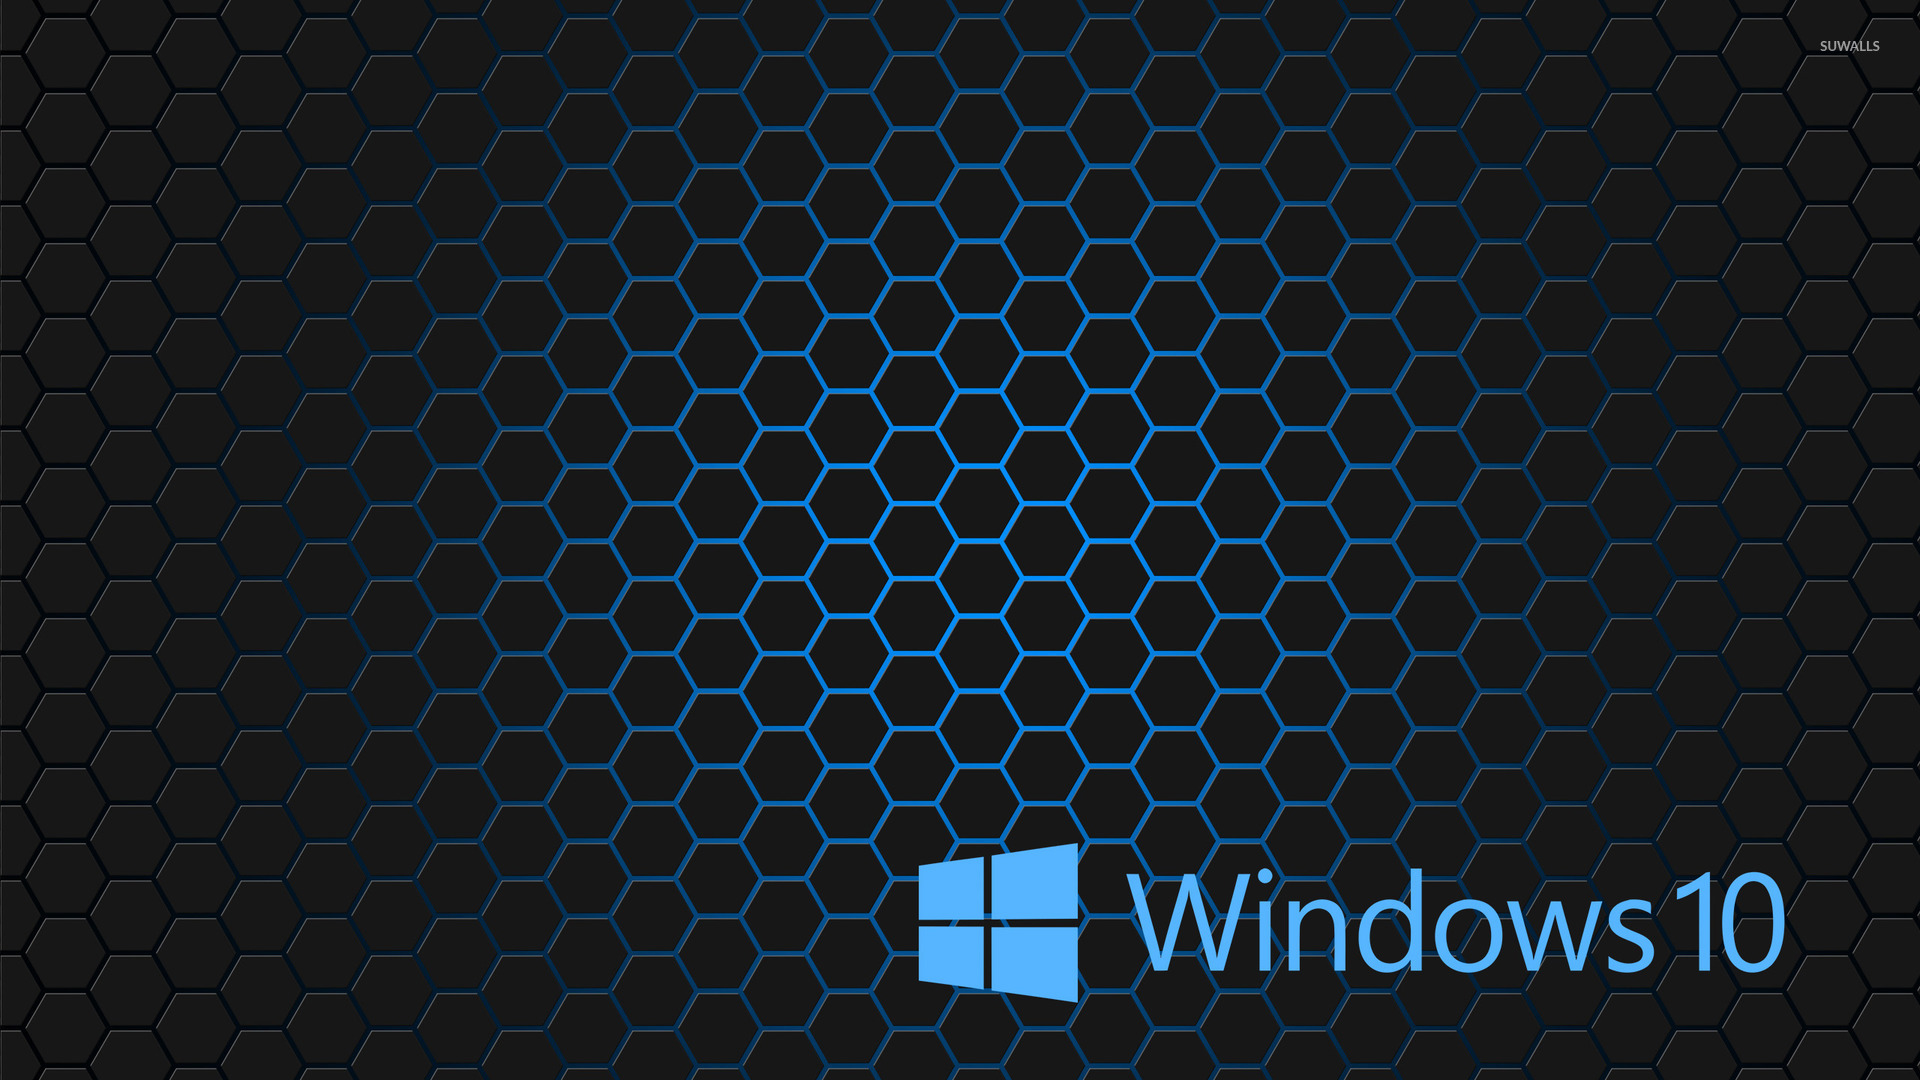 Windows Blue Text Logo On Hexagons Wallpaper Puter